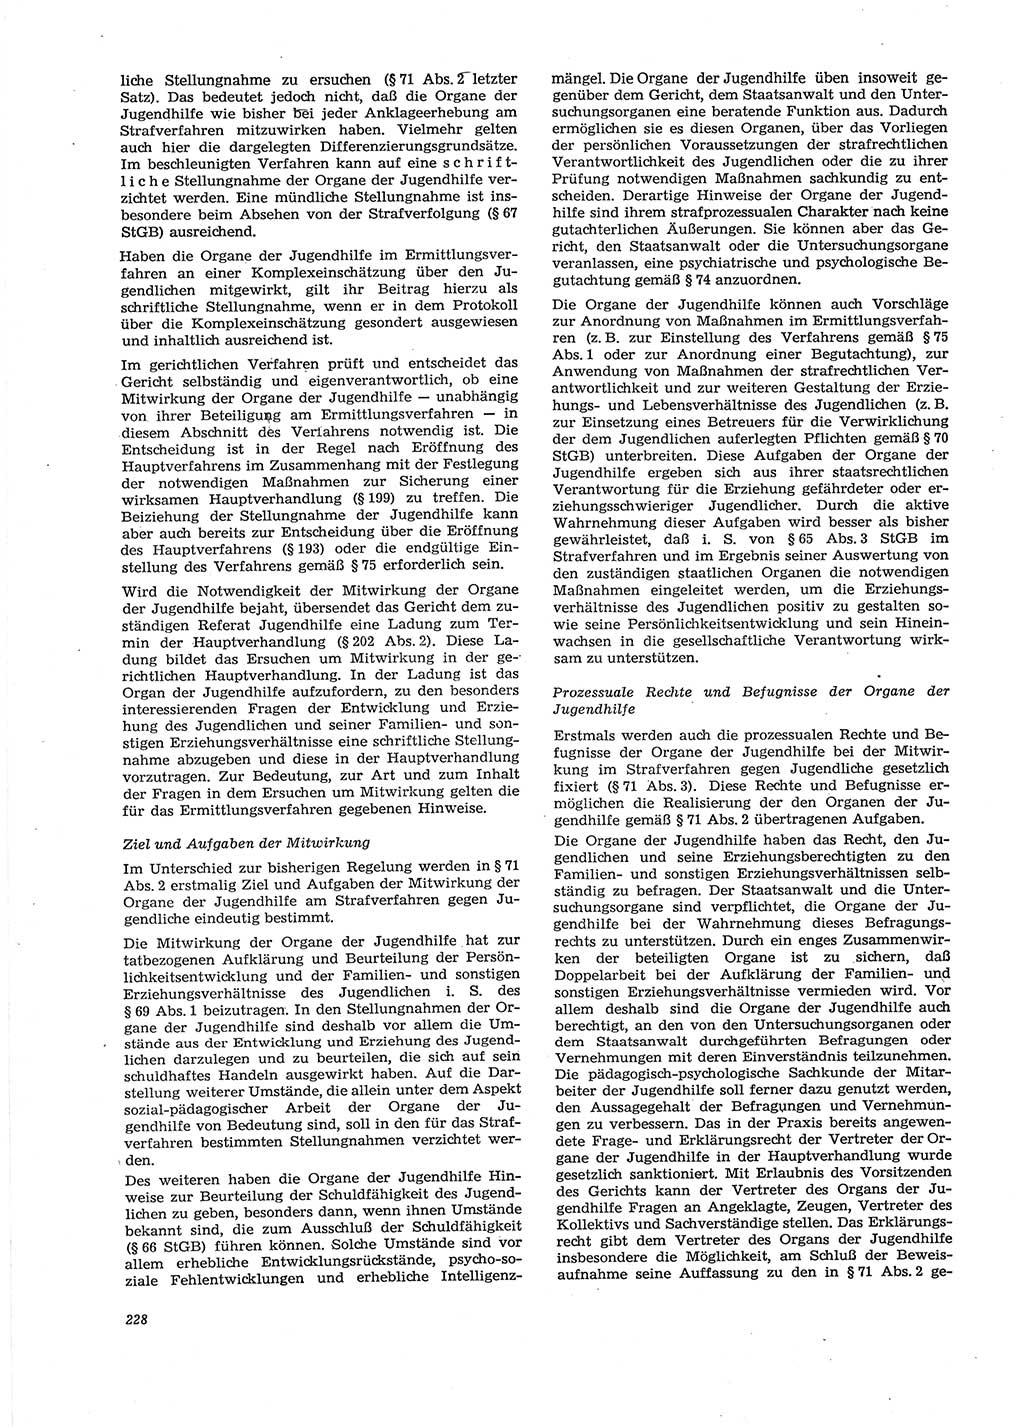 Neue Justiz (NJ), Zeitschrift für Recht und Rechtswissenschaft [Deutsche Demokratische Republik (DDR)], 29. Jahrgang 1975, Seite 228 (NJ DDR 1975, S. 228)